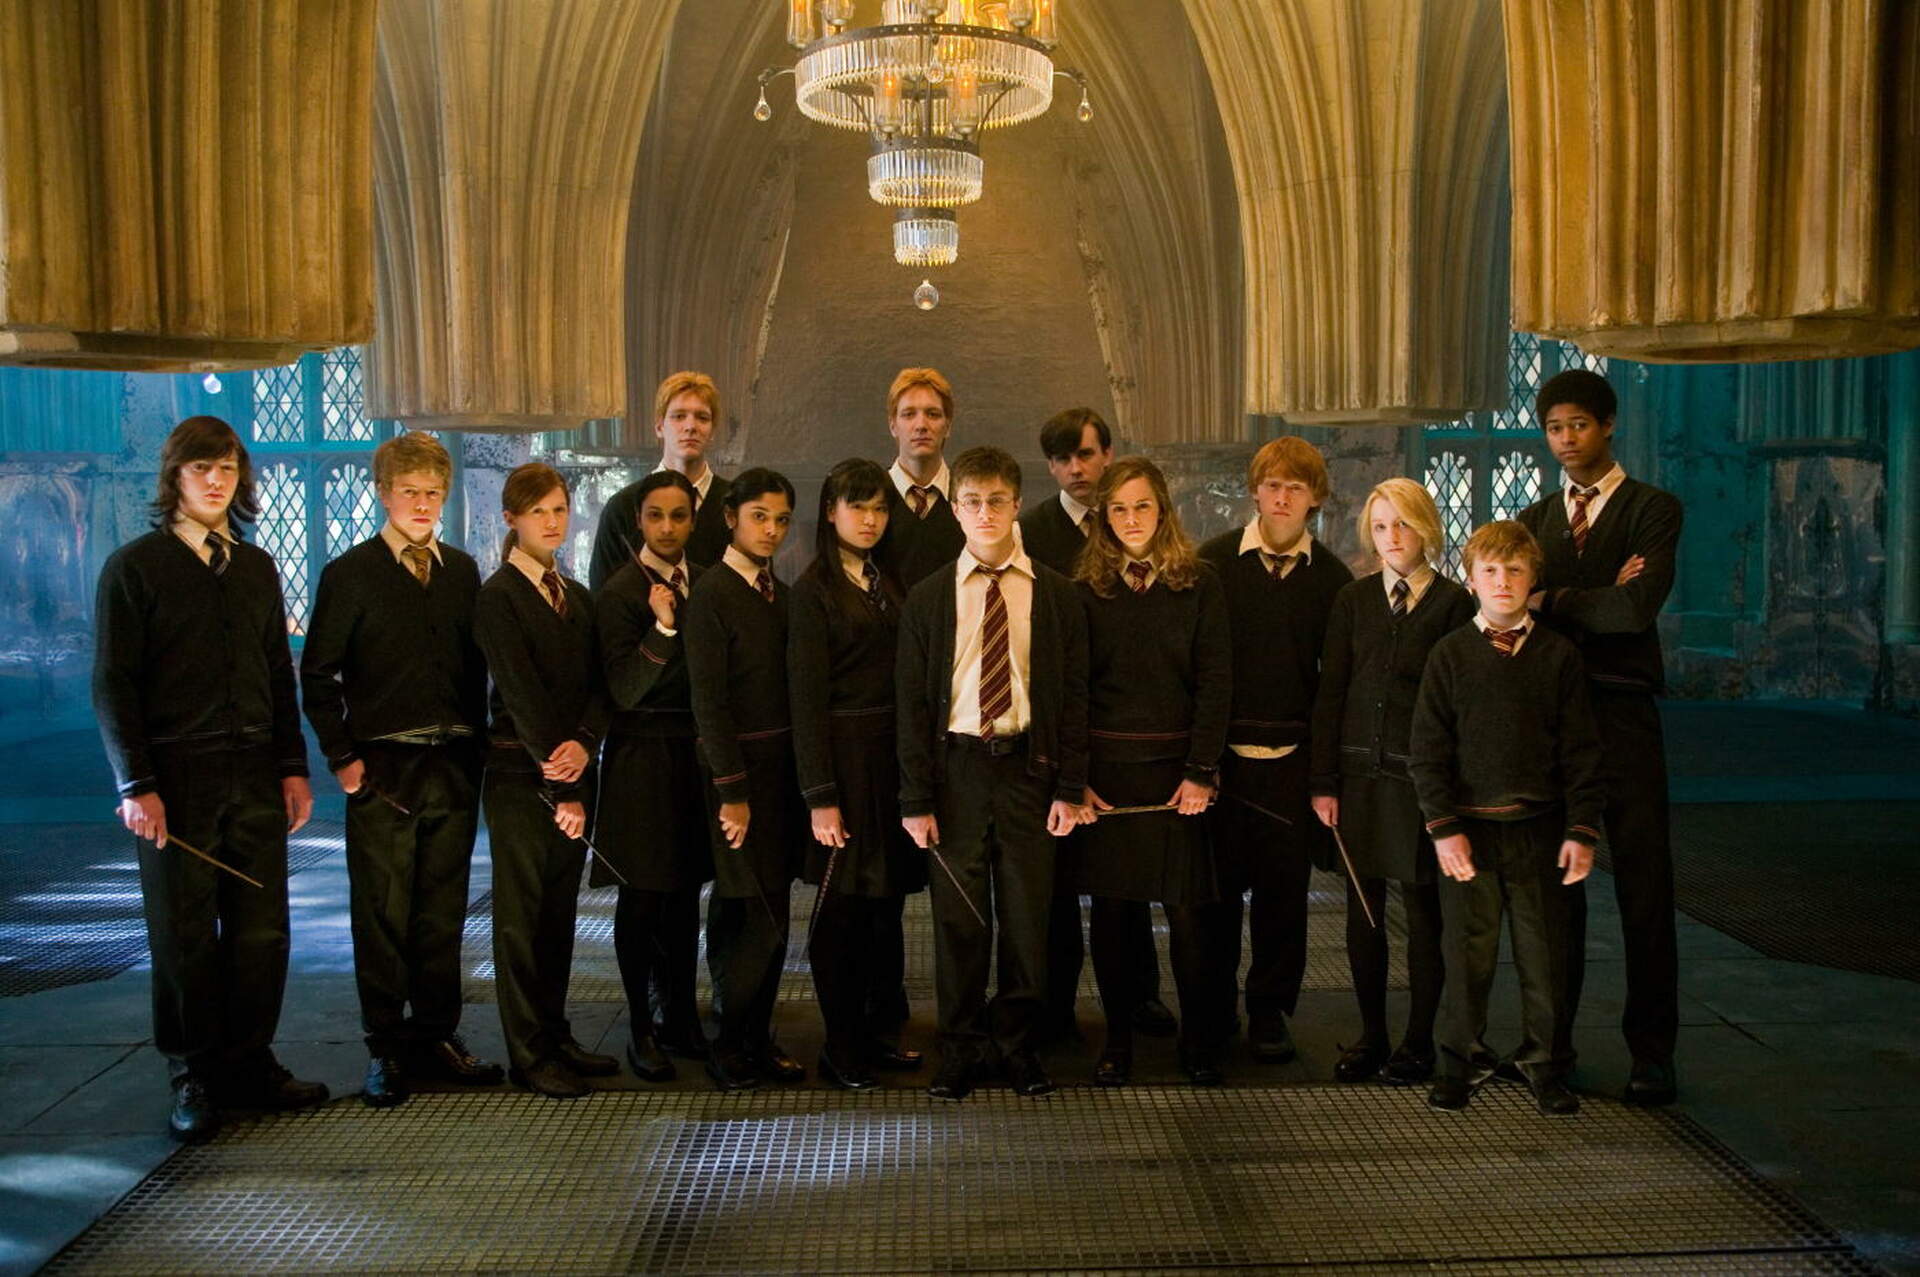 Harry Potter 5 und der Orden des Phoenix - Szenenbild 12 von 26